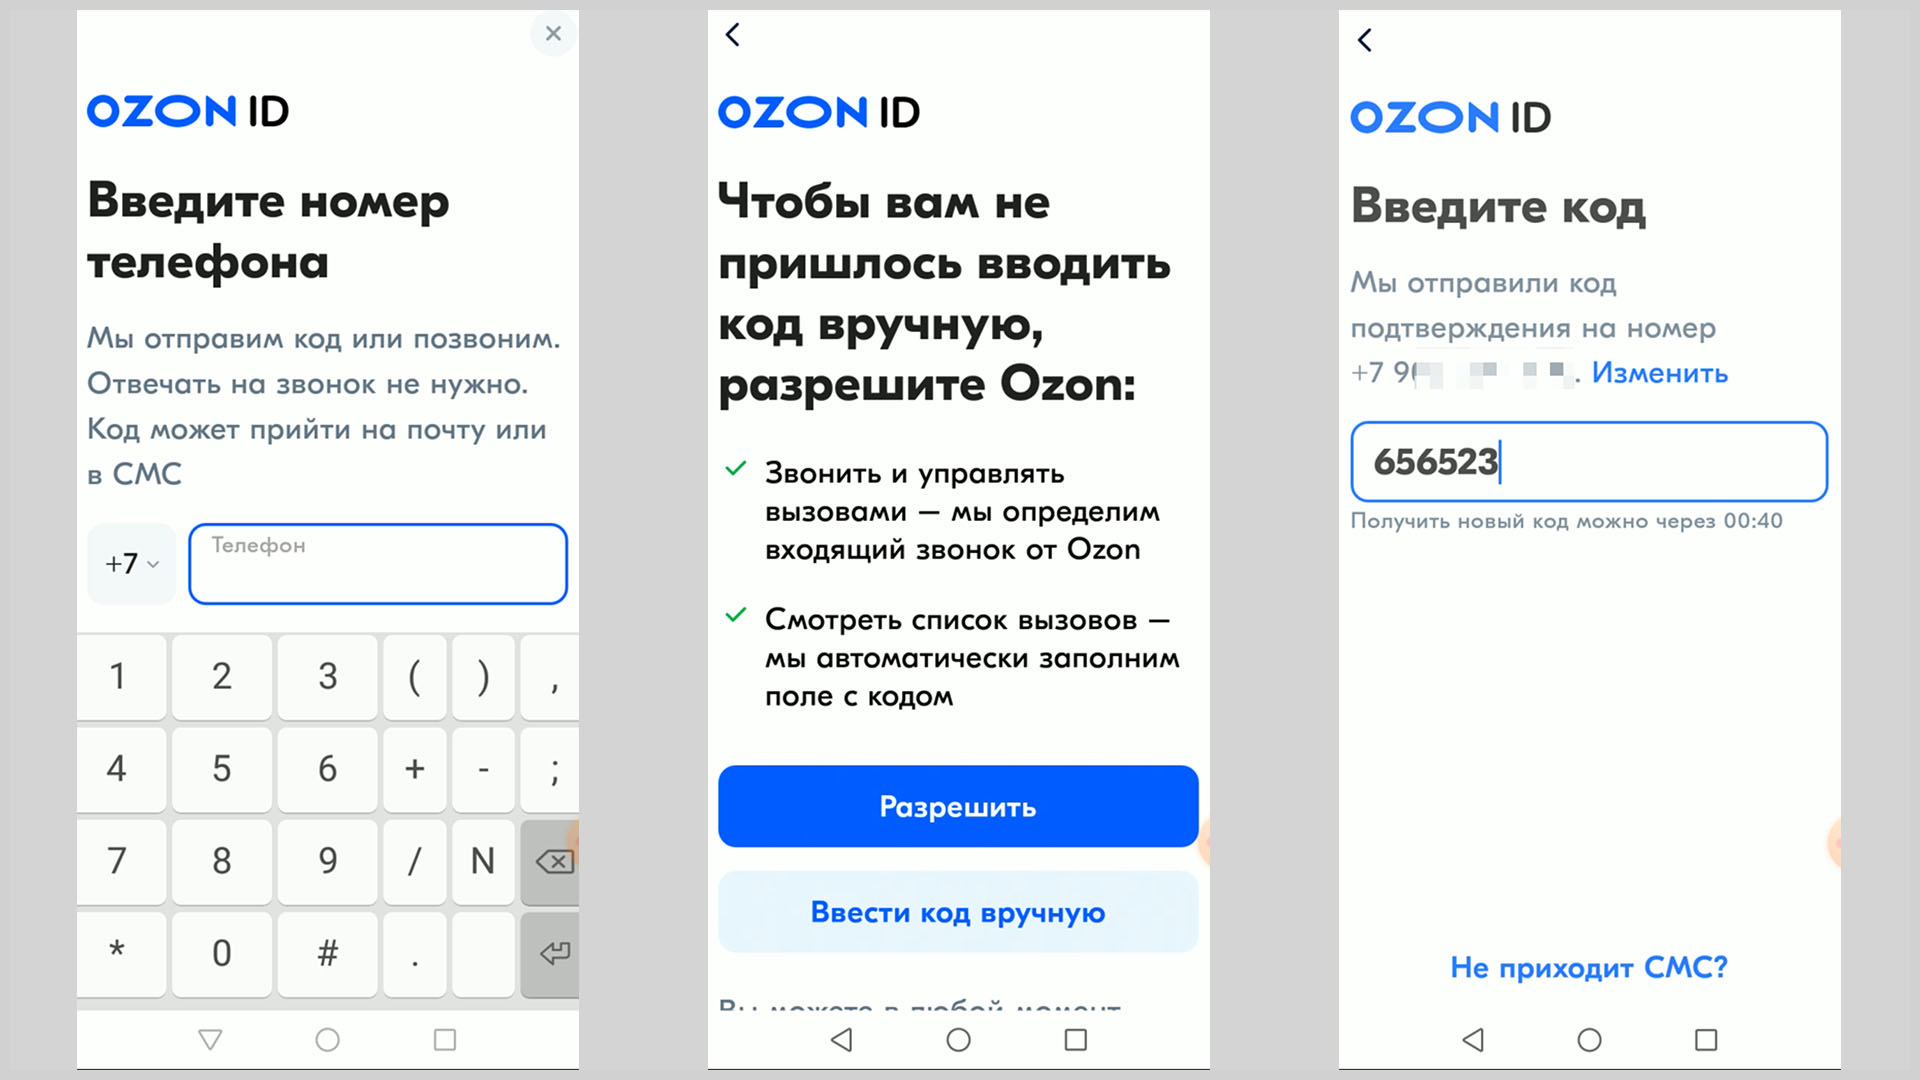 Скриншоты экрана смартфона иллюстрирующие авторизацию в приложении OZON.